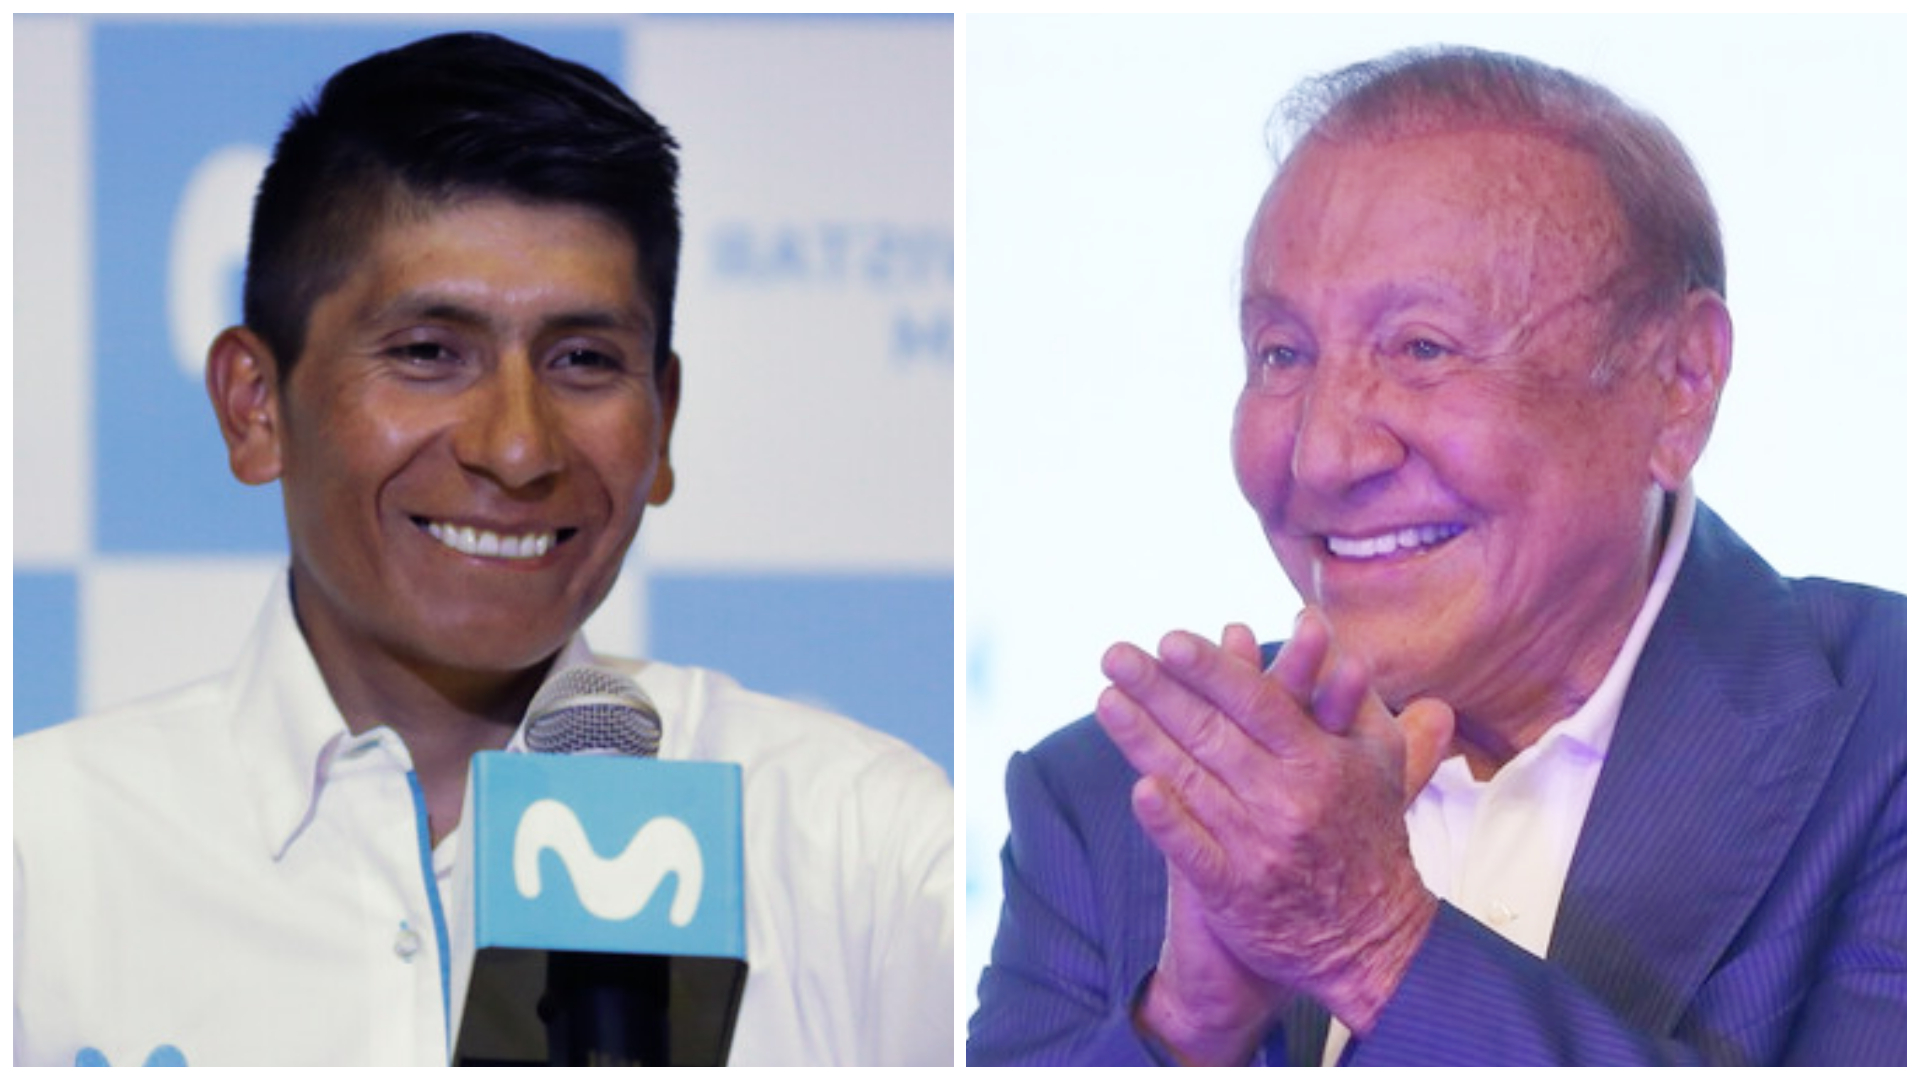 Rodolfo Hernández le responde a Nairo Quintana que está "alegre" tras revelar su voto por él en las elecciones del 29 de mayo. Fotos: Colprensa.